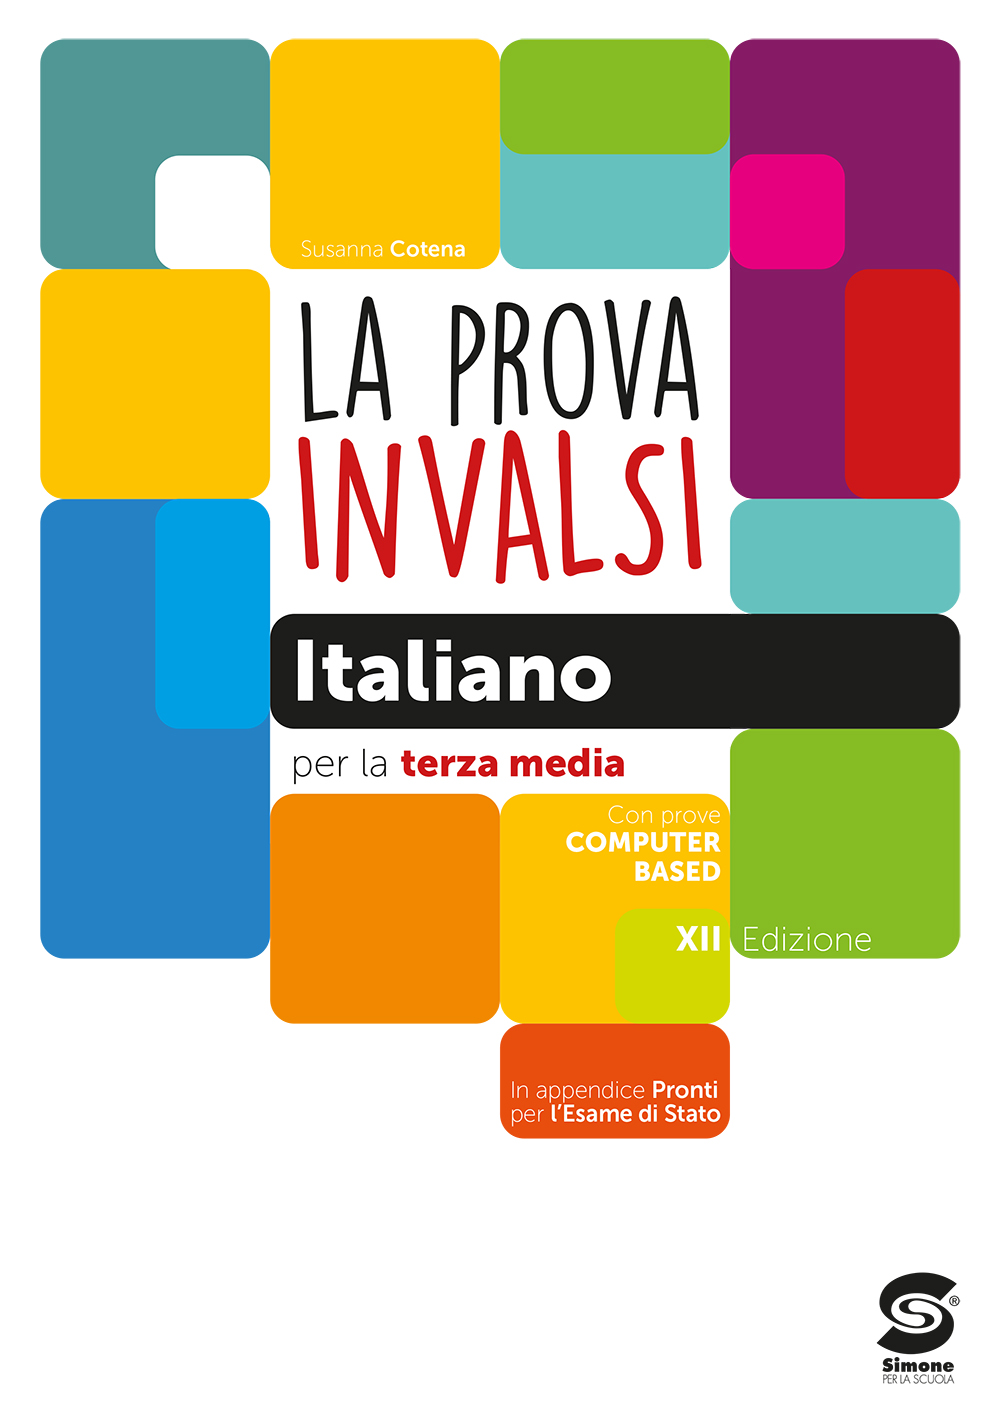 La prova INVALSI Italiano per la terza media - S16/2021 - Simone